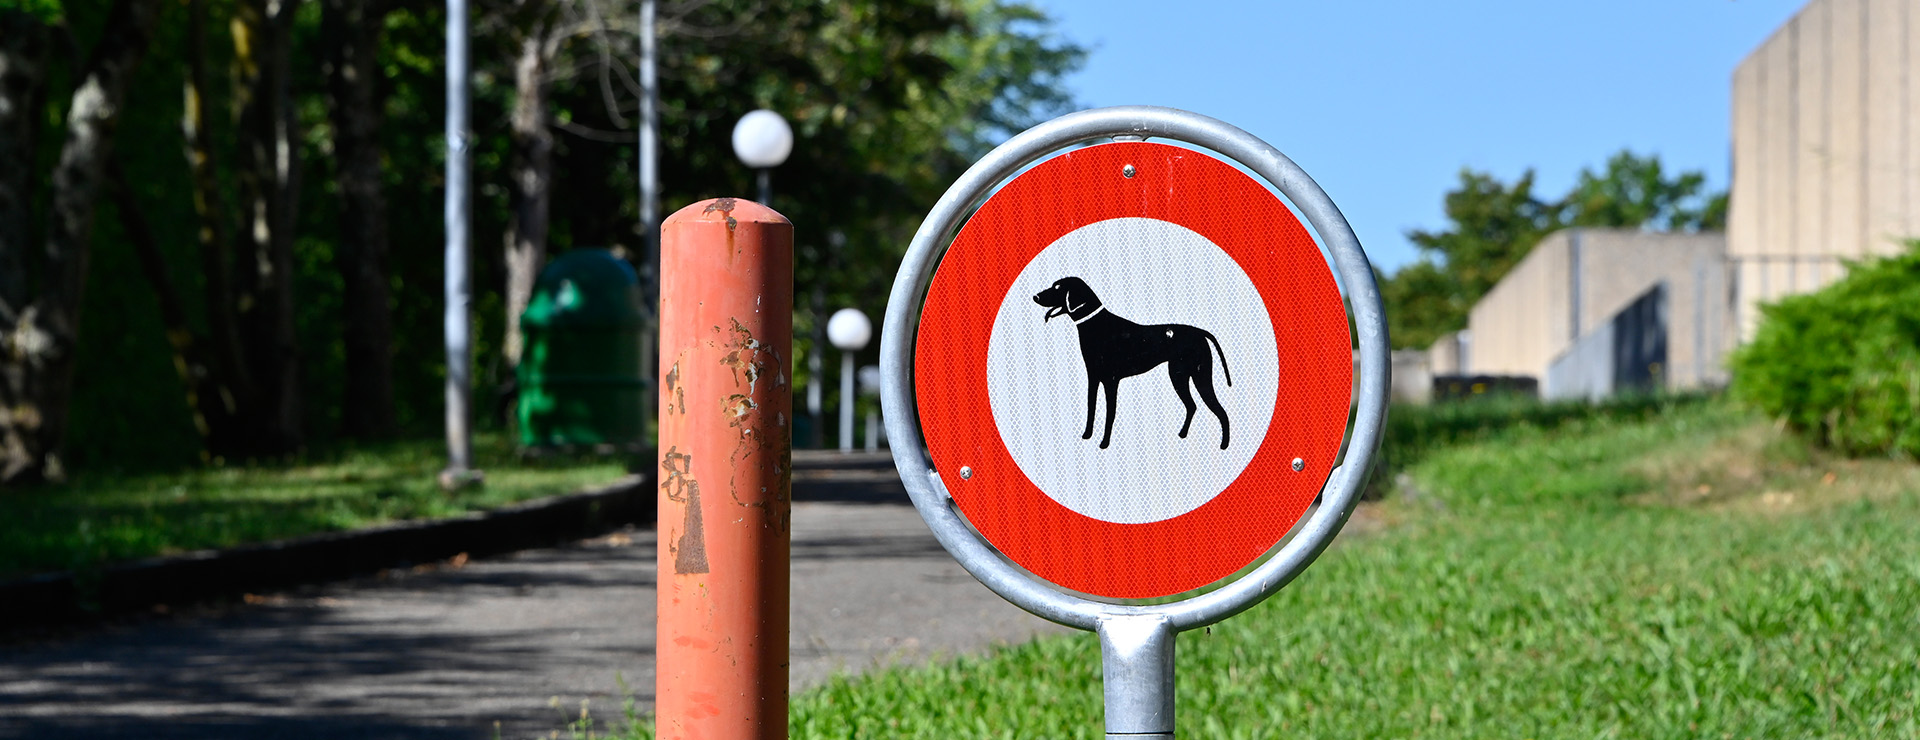 Campagne communale pour des espaces publics propres sans déjections canines